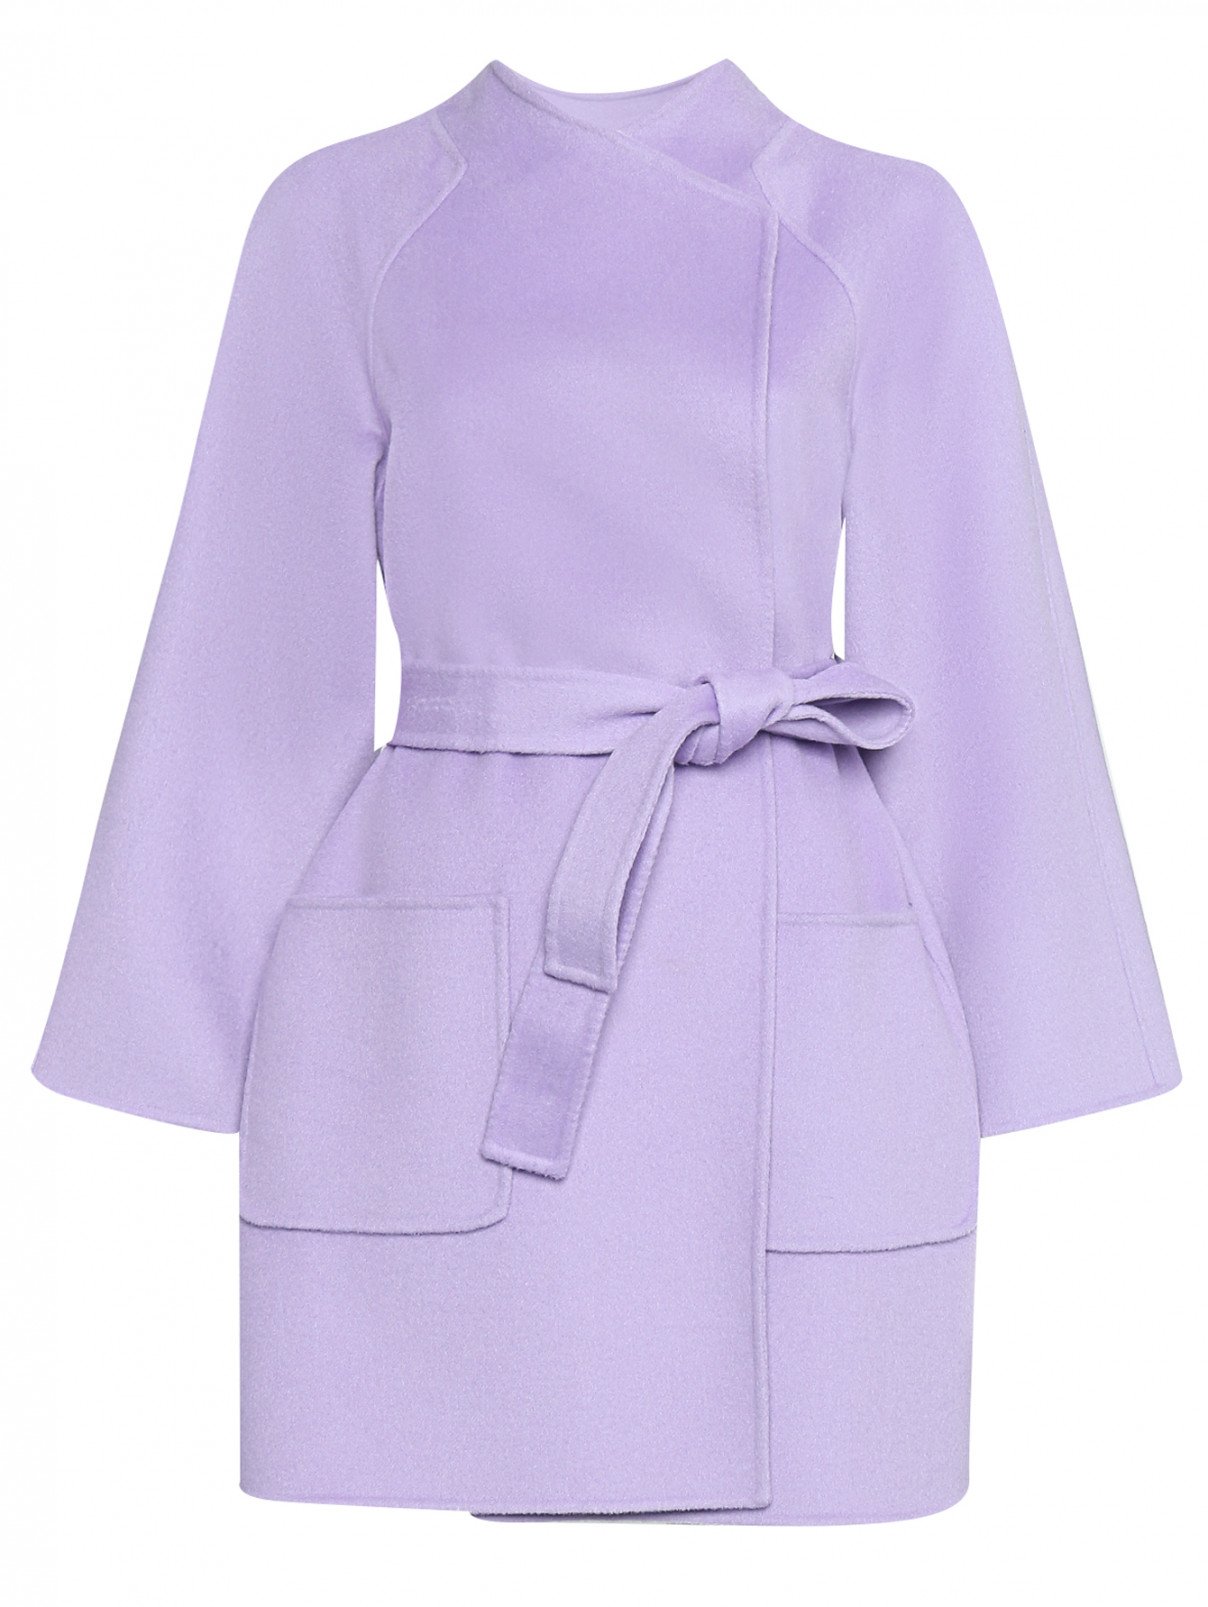 Пальто из шерсти с поясом Luisa Spagnoli  –  Общий вид  – Цвет:  Фиолетовый